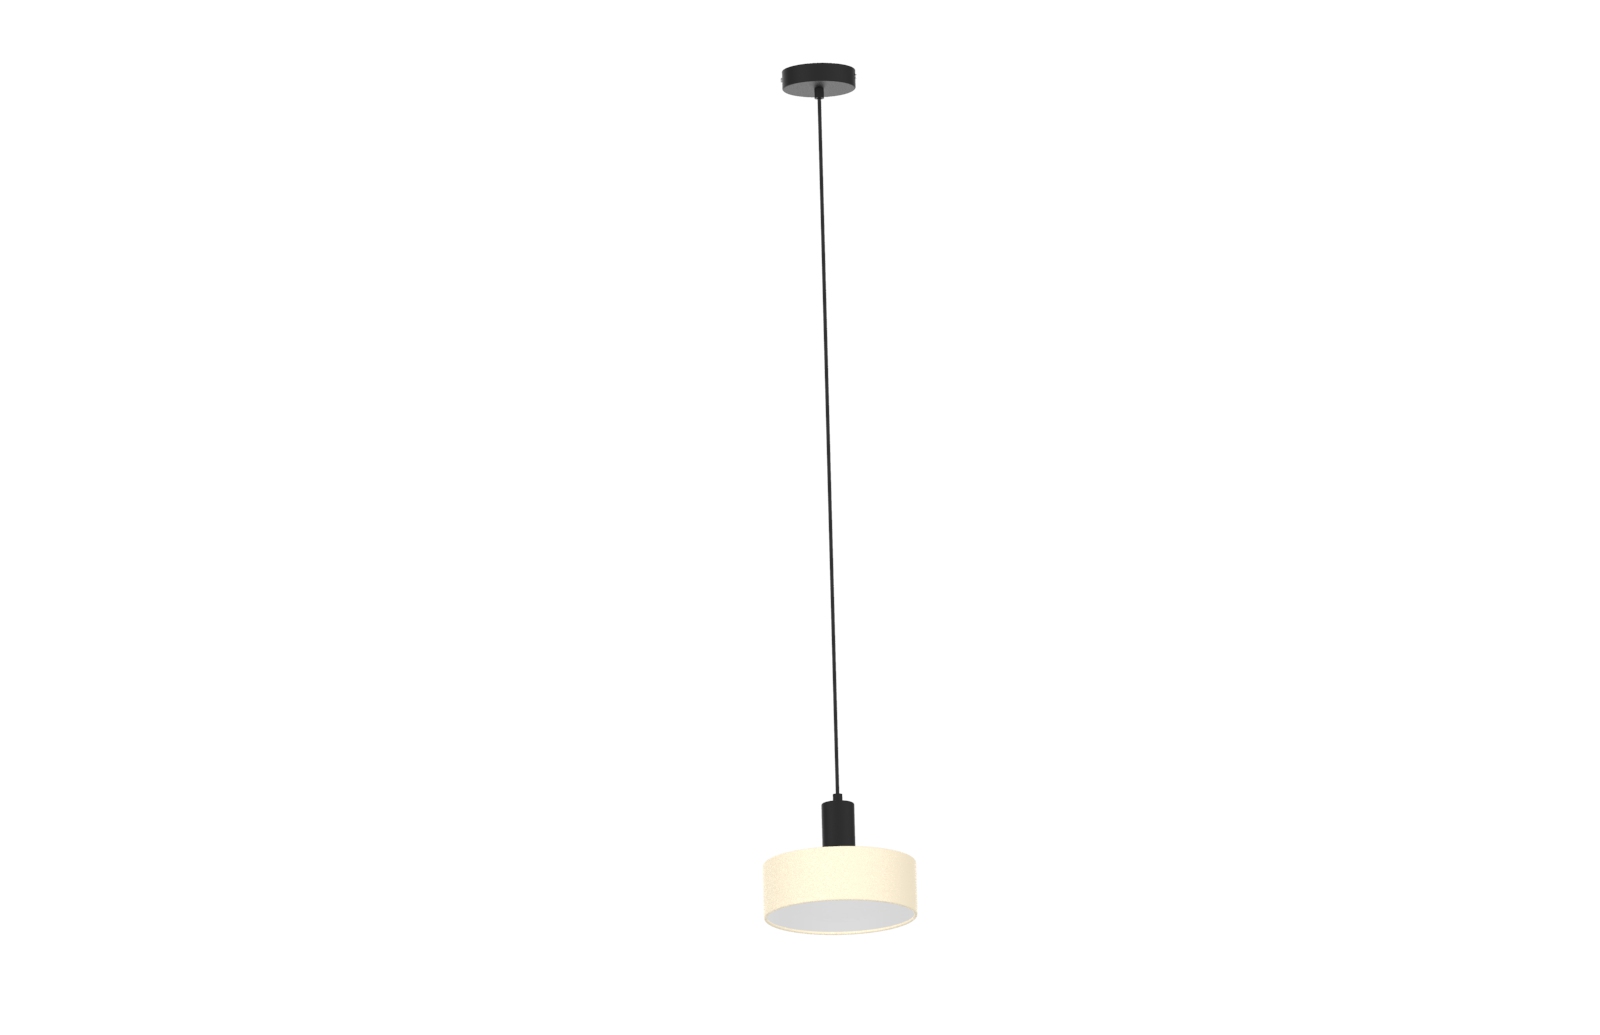 Pendant lamp with Cloth shape E27 socket 12W E27 Panel Bulb Included